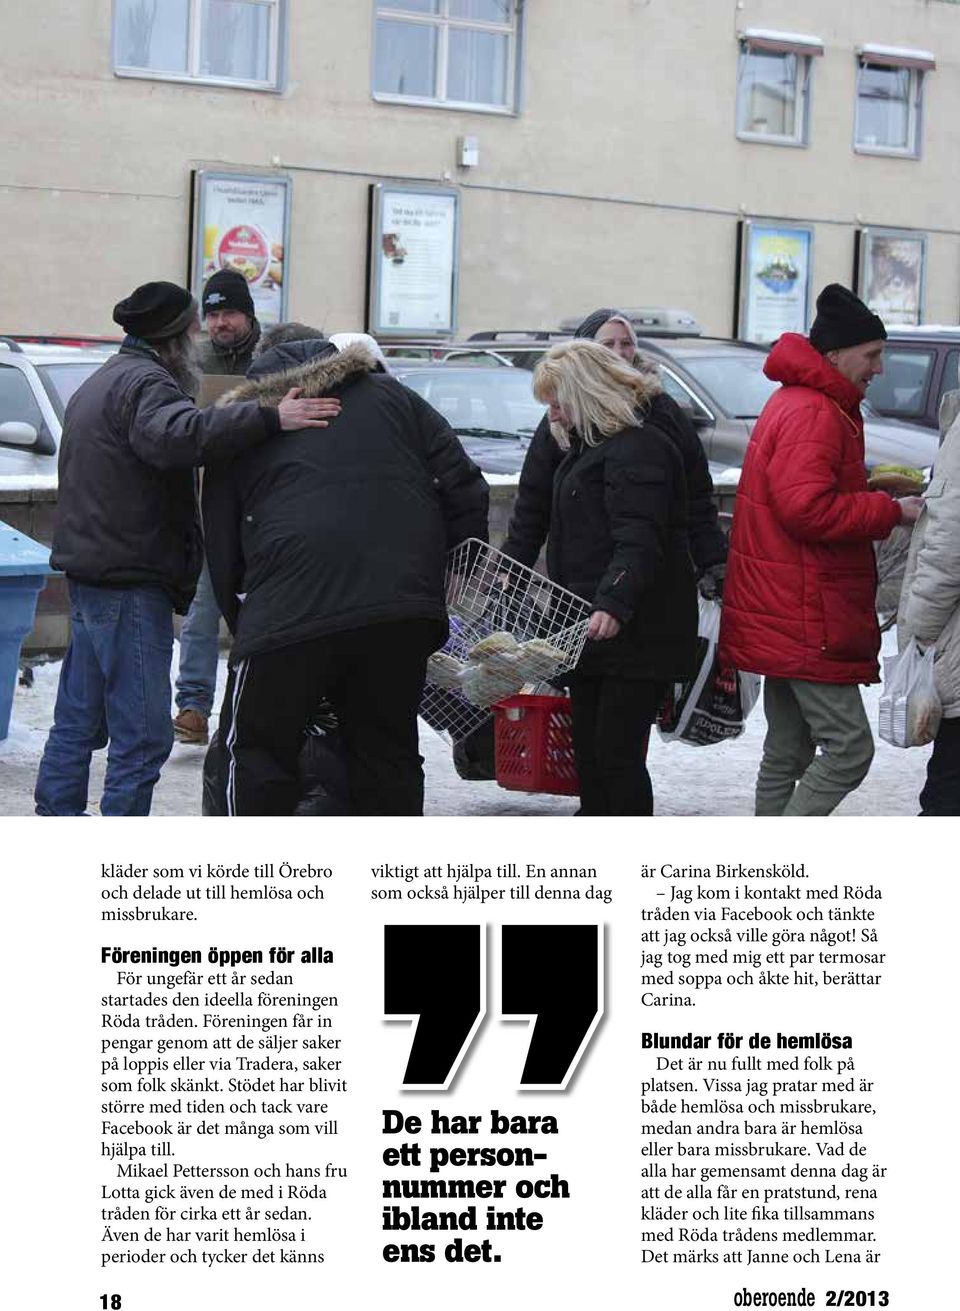 Mikael Pettersson och hans fru Lotta gick även de med i Röda tråden för cirka ett år sedan. Även de har varit hemlösa i perioder och tycker det känns 18 viktigt att hjälpa till.